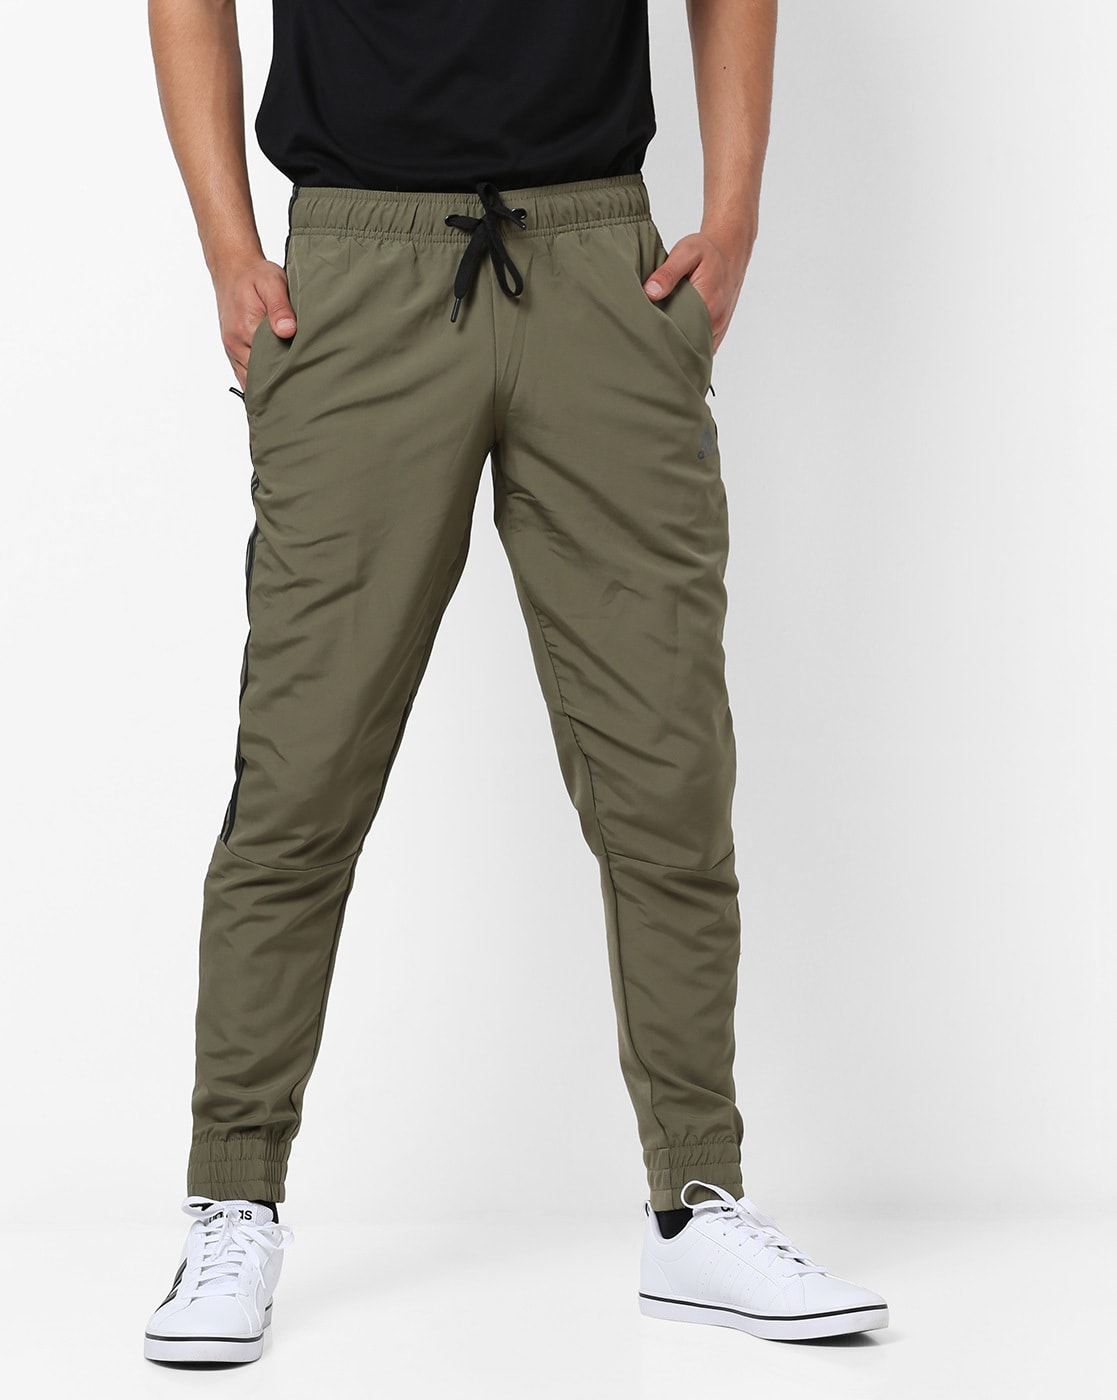 army green adidas pants